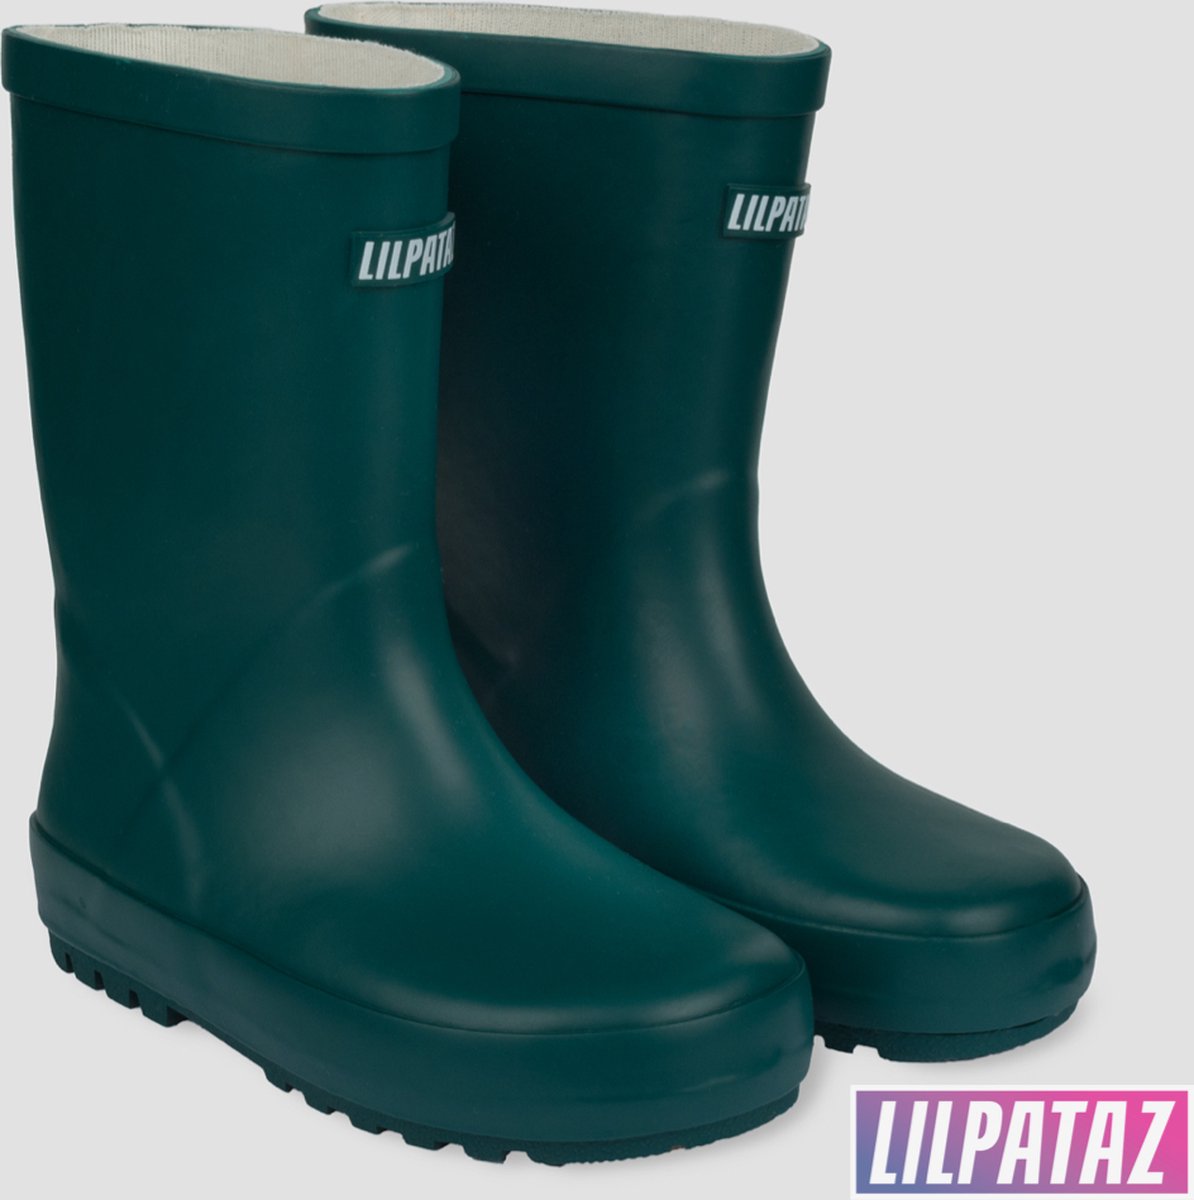 LilPataz Rainboot - Regenlaars kinderen - Jongens Meisjes - Groen - kinder regenlaarzen - Maat 21